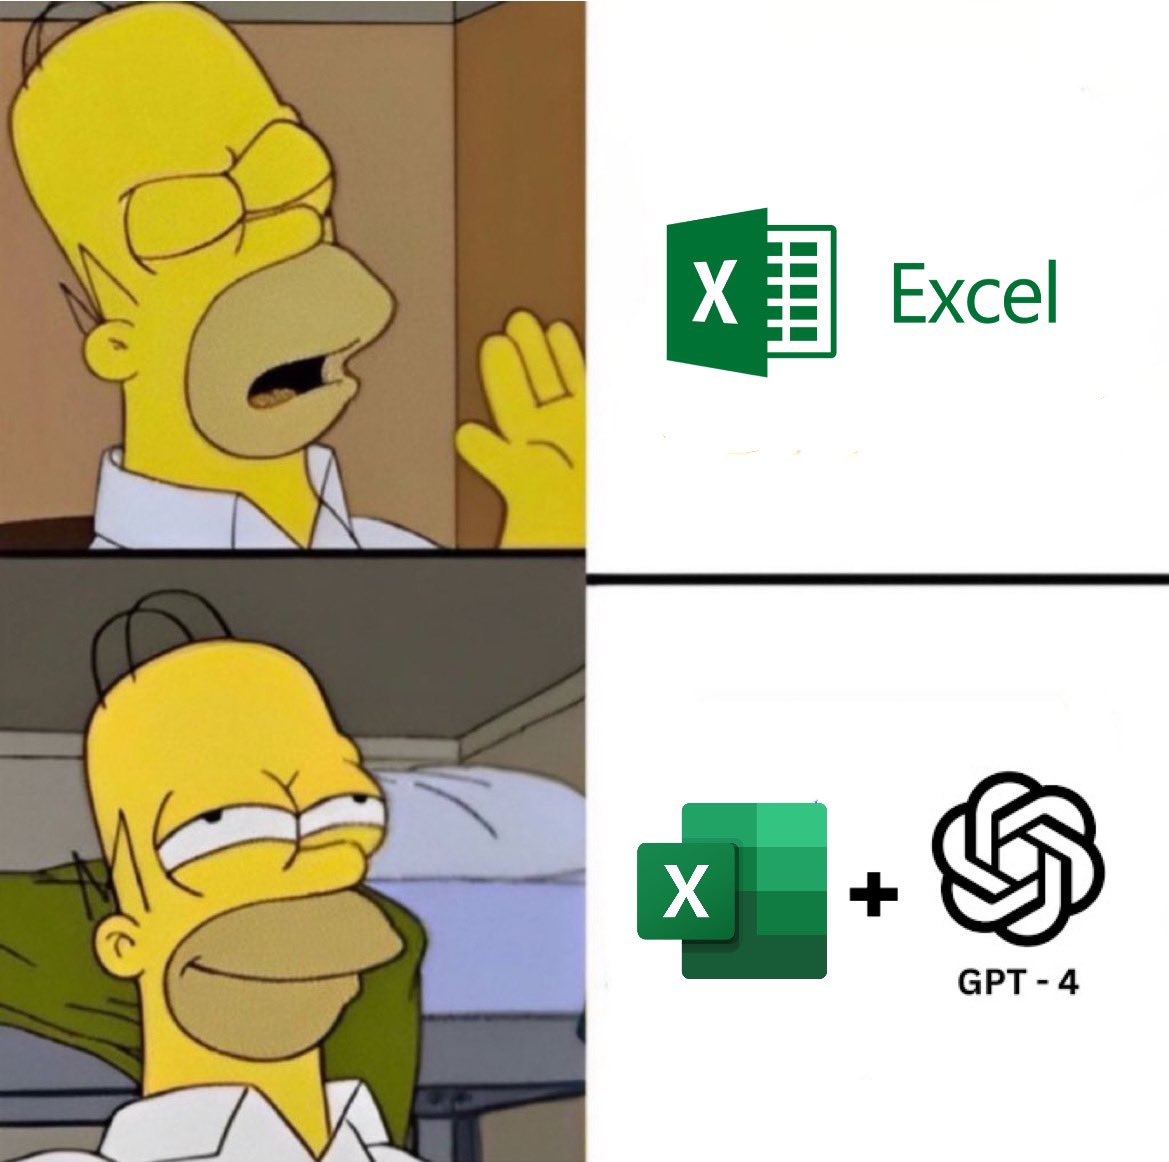 Excel kullanmak bazen aşırı kafa karıştırıcı olabiliyor.

Gelin size ChatGPT ile nasıl formüller, kodlar ve tablolar oluşturabileceğiniz göstereyim: